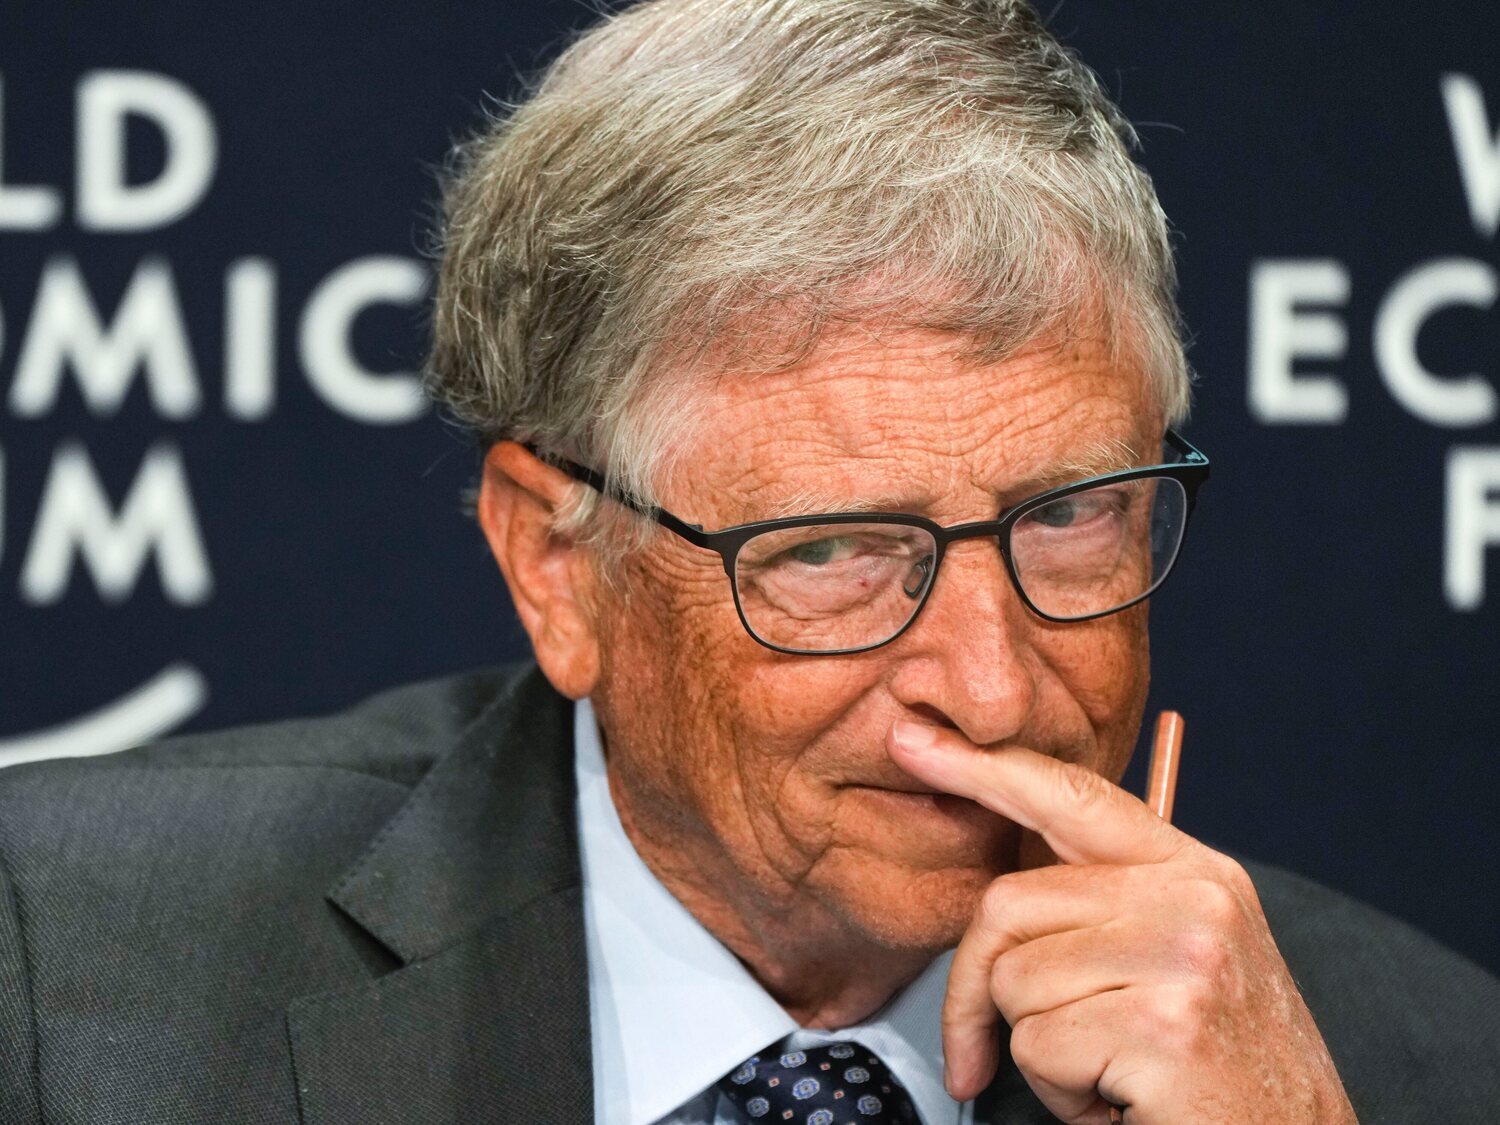 La predicción de Bill Gates sobre lo que pasará después del verano y la crisis que se avecina